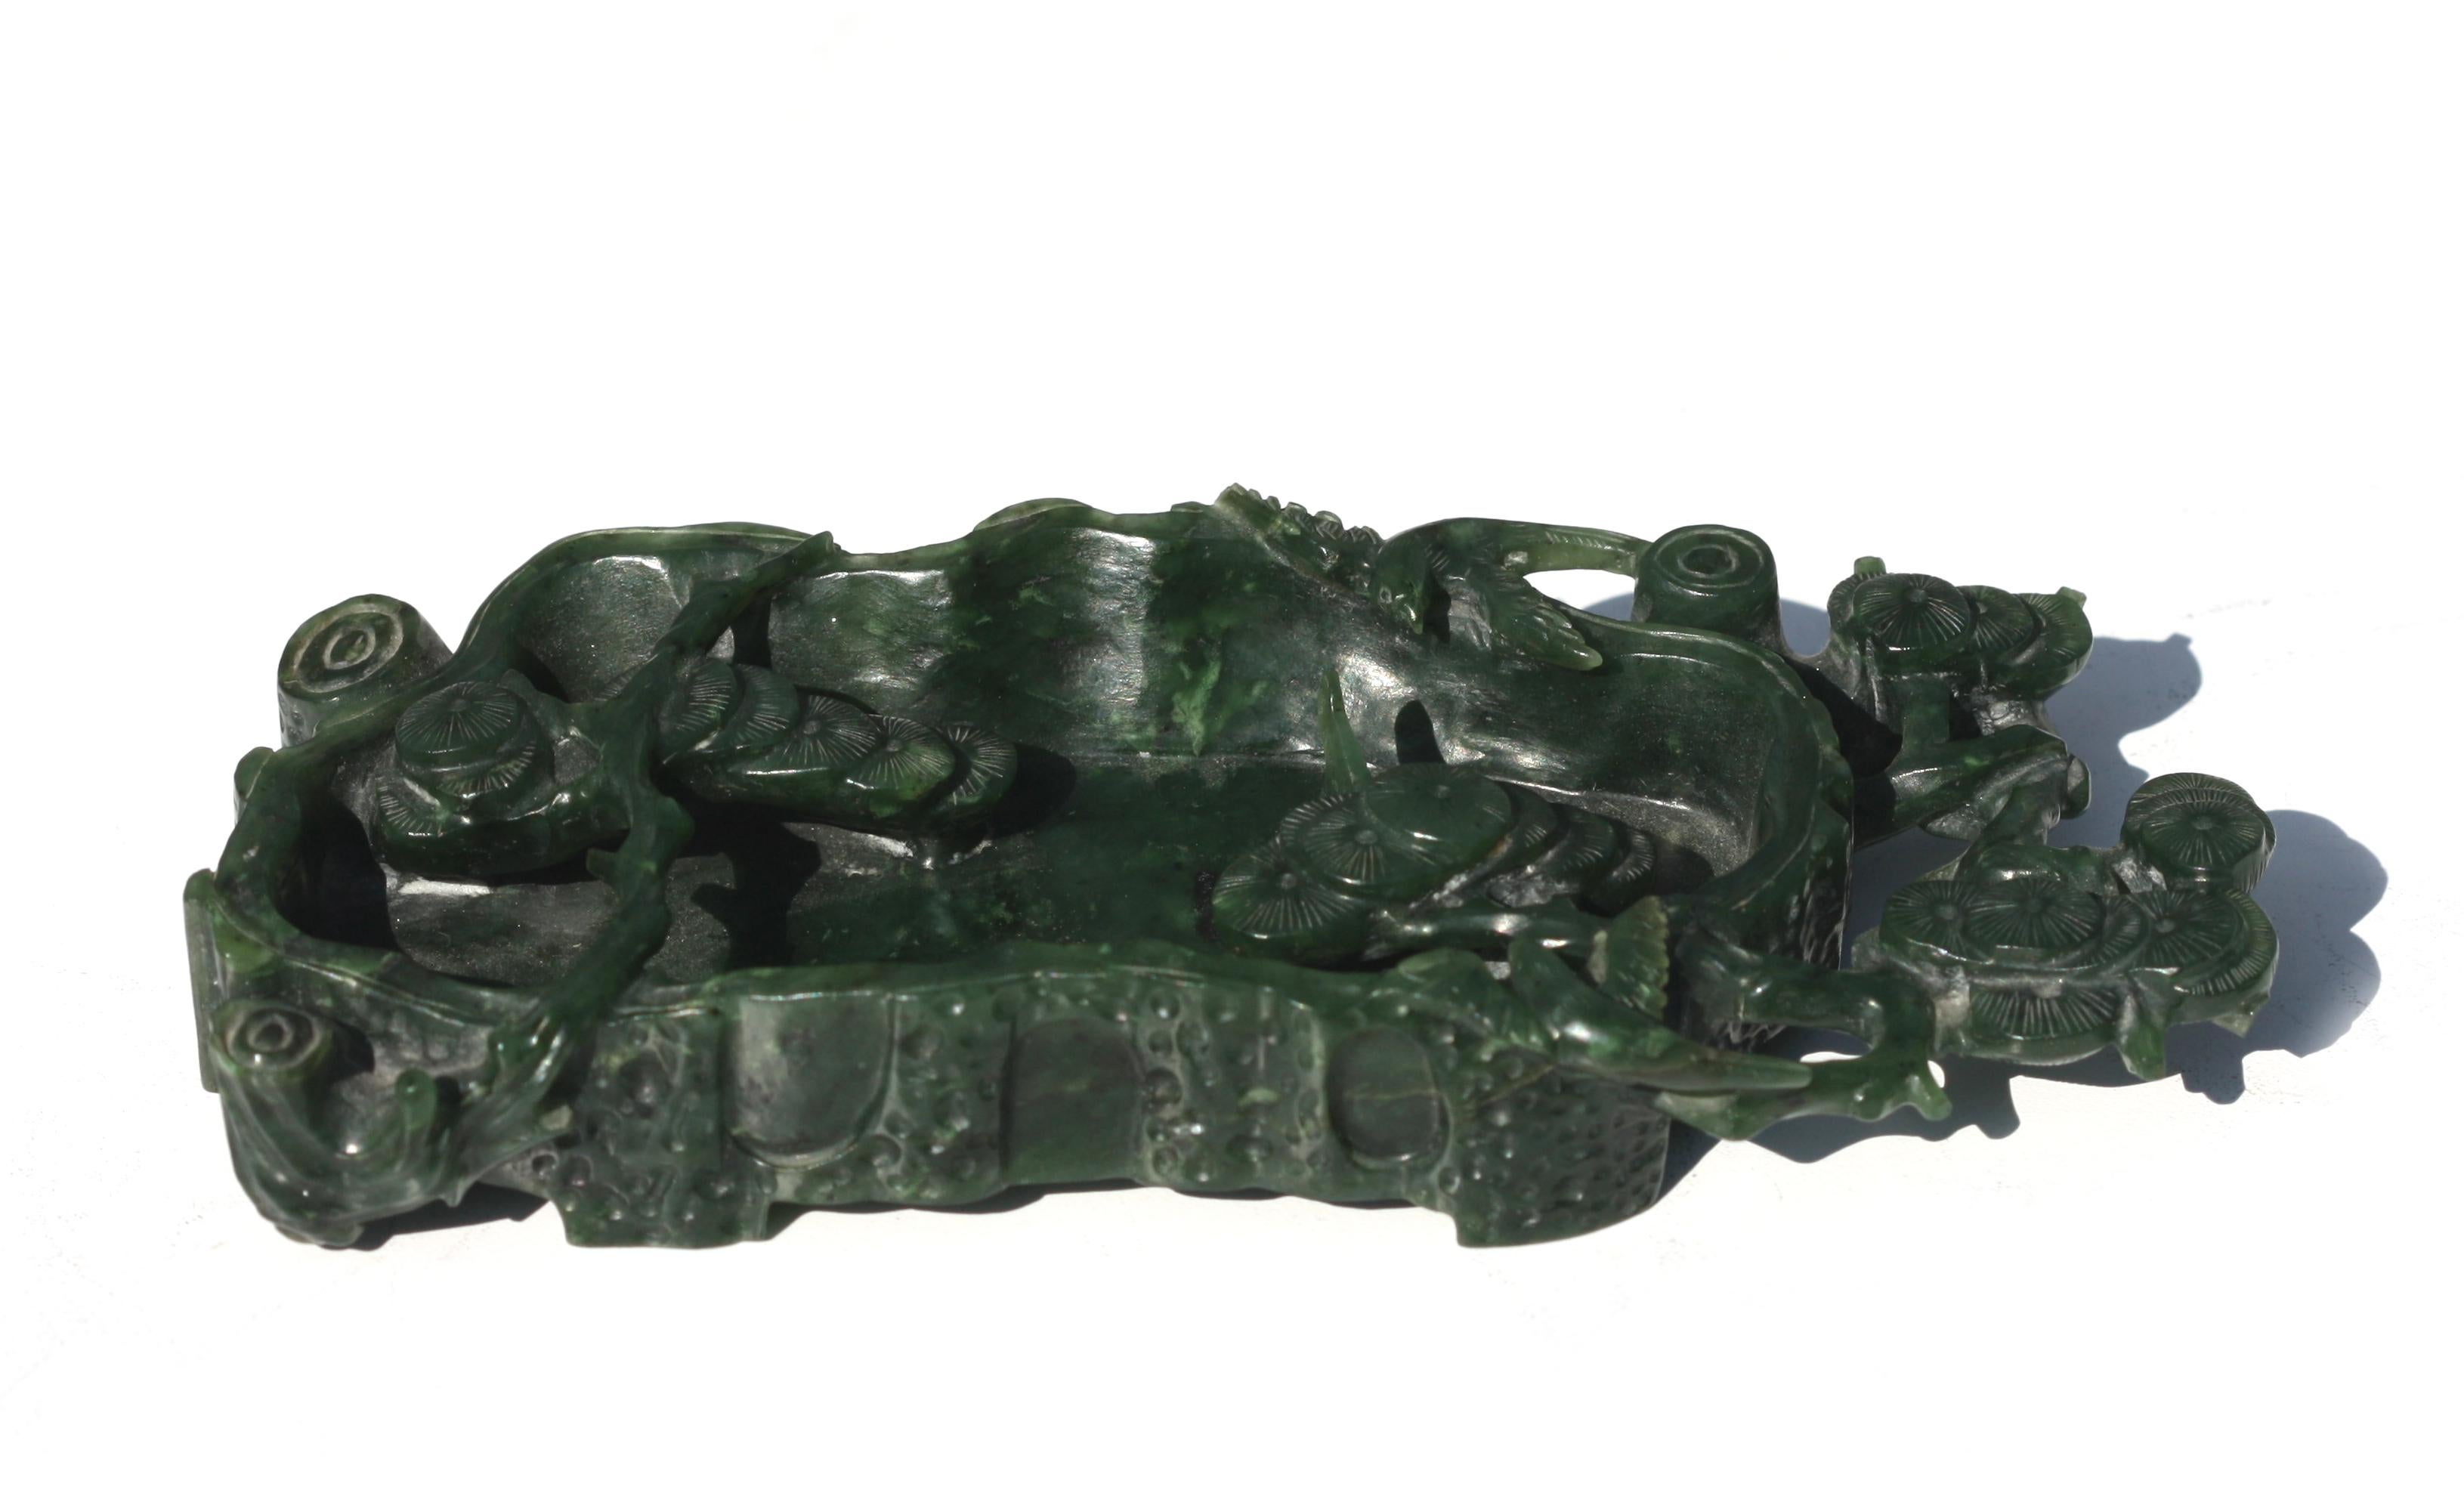 Lave-pinceau chinois en jade épinard
Représentation d'un bassin rocheux rectangulaire asymétrique, avec des branches de lingzhi en fleurs.
Hauteur 2,54 cm, Largeur 17,14 cm, Profondeur 7,62 cm.